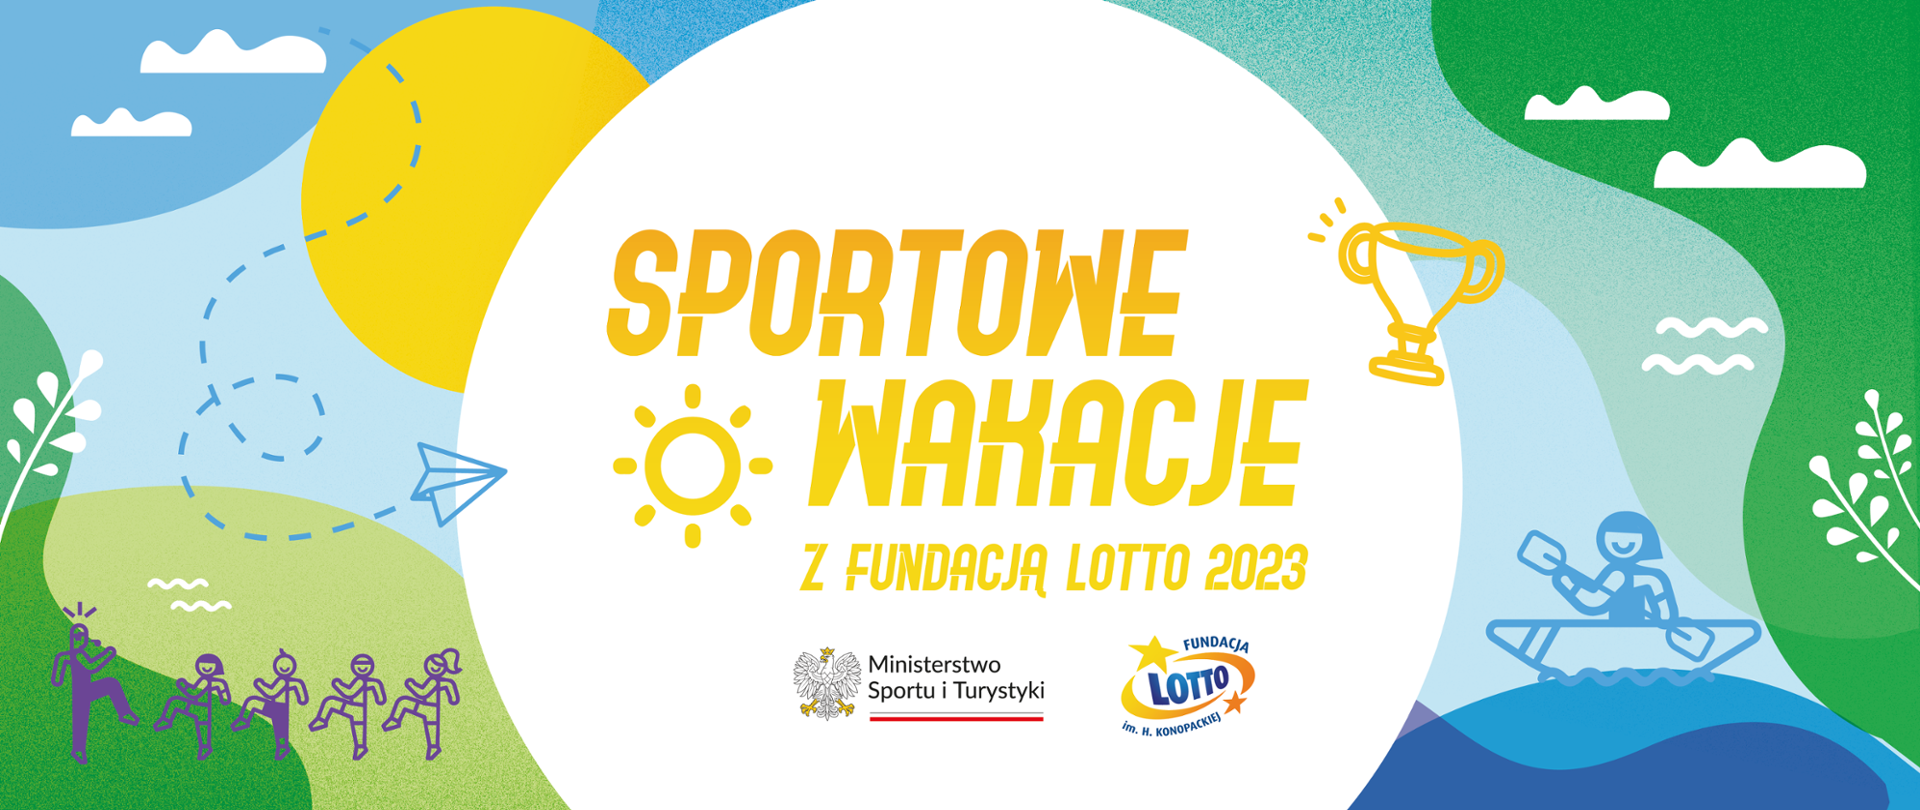 Kolorowa grafika z żółtym napisem Sportowe Wakacje z Fundacją Lotto 2023. Poniżej napisu logotypy ministerstwa i Fundacji Lotto